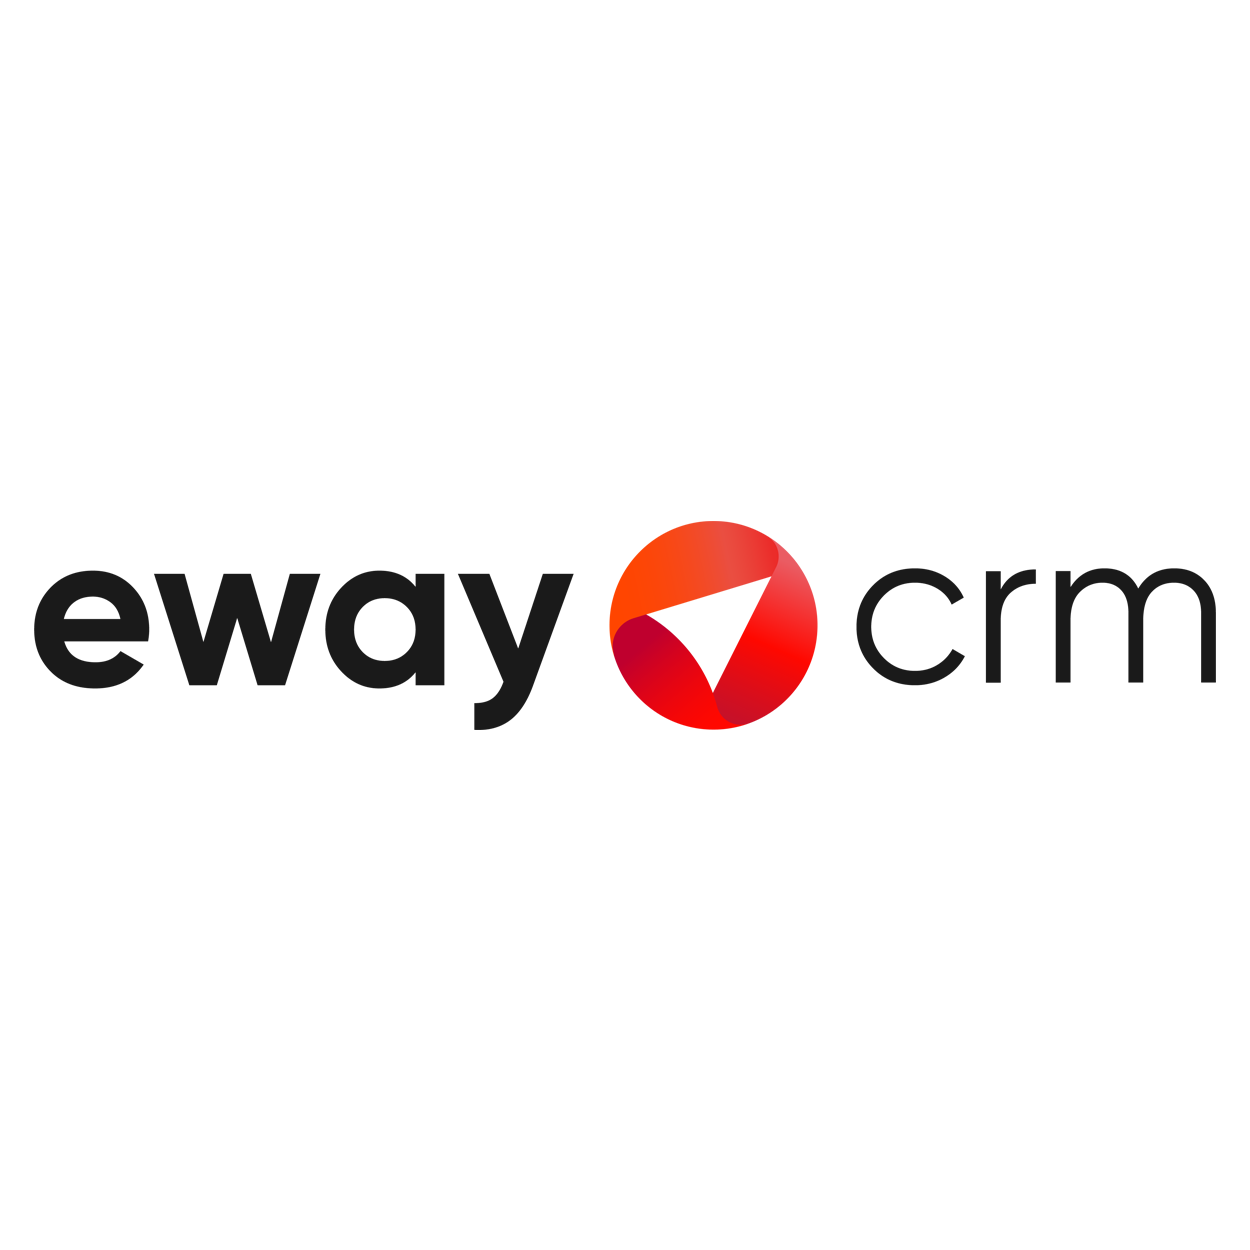 eway crm logo